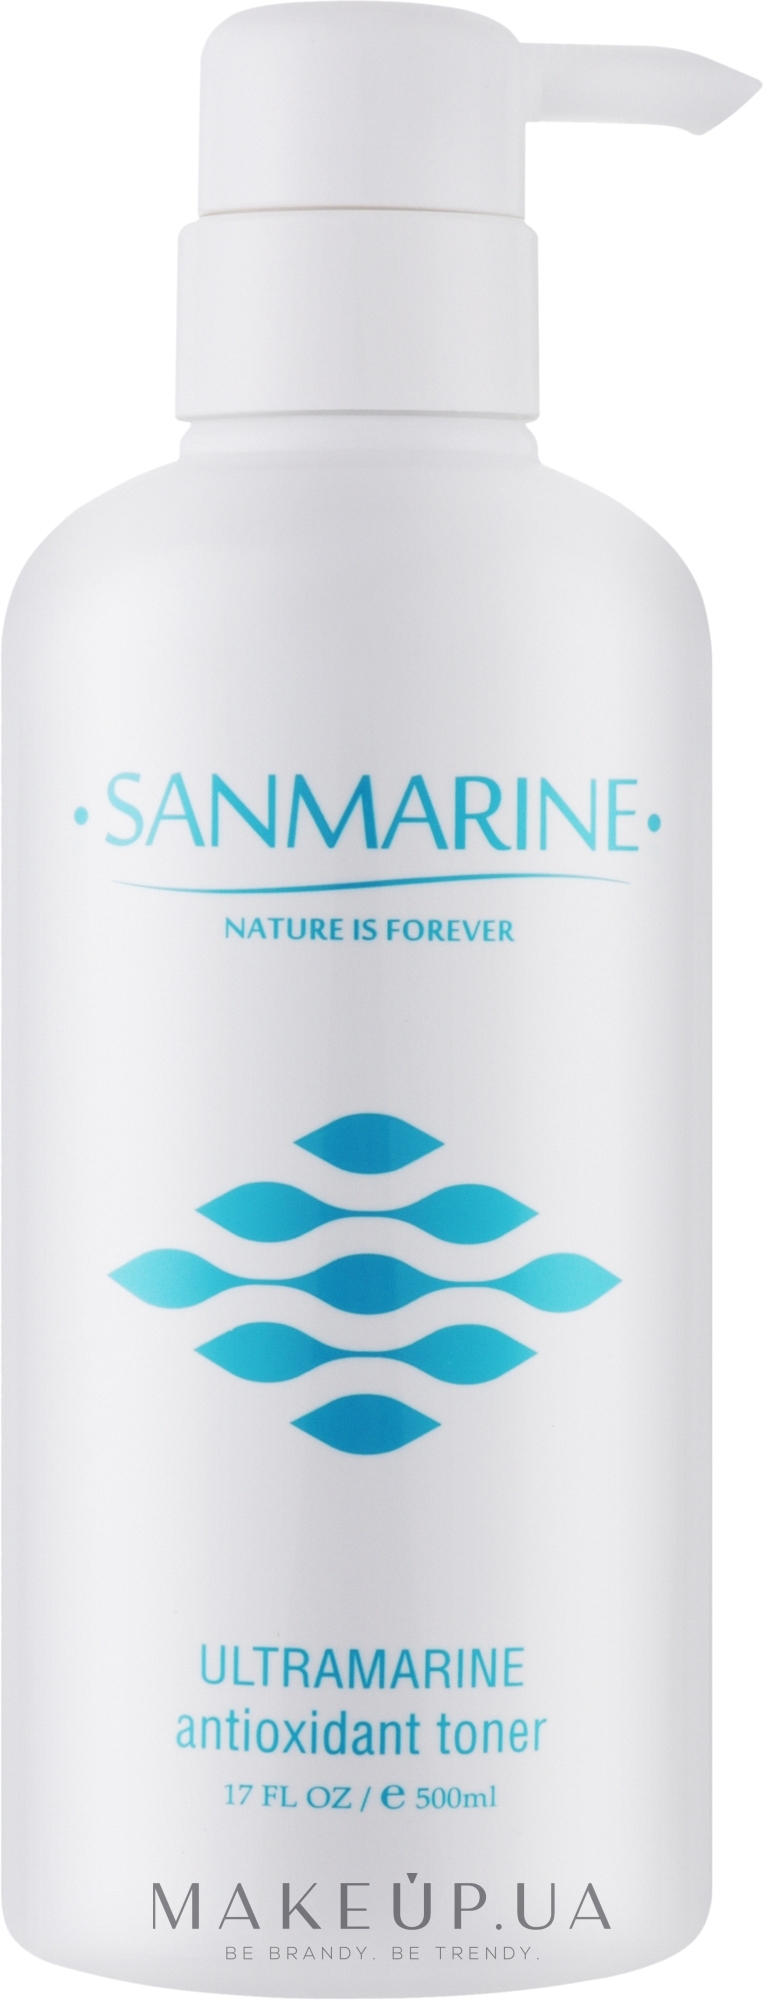 Антиоксидантний тонік для обличчя - Sanmarine Ultramarine Antioxidant Toner — фото 500ml